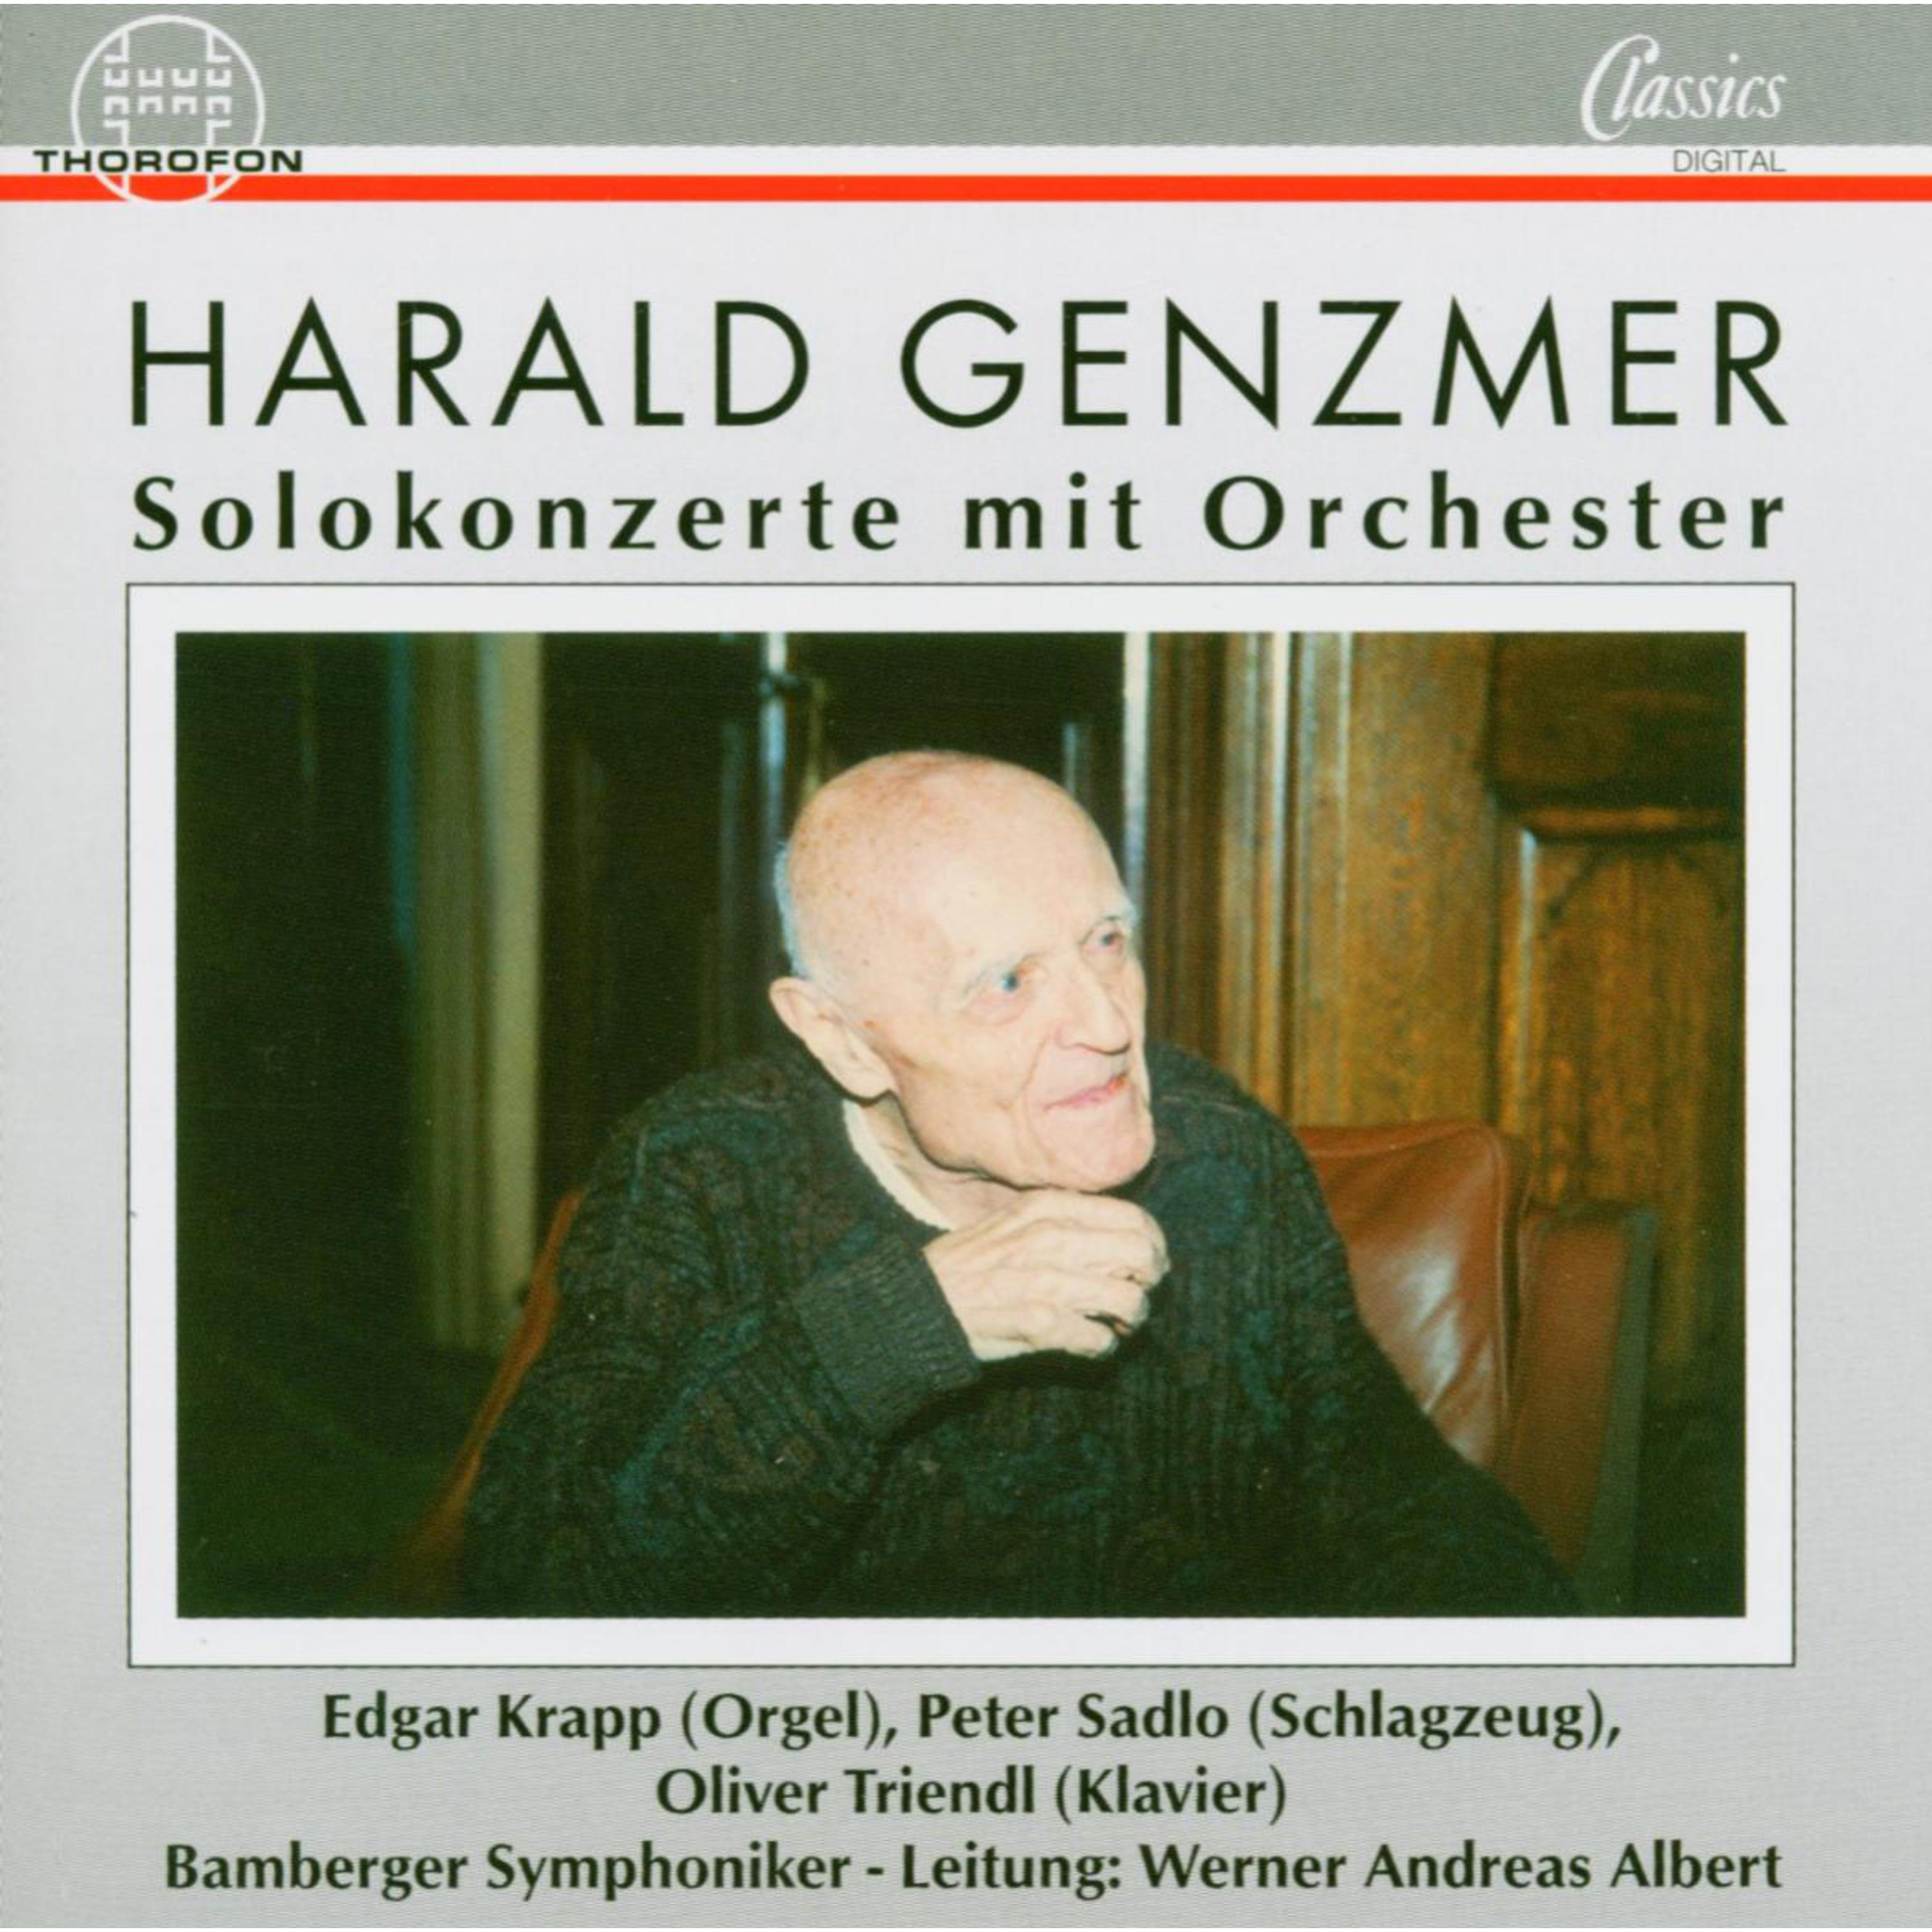 Harald Genzmer: Solokonzerte mit Orchester